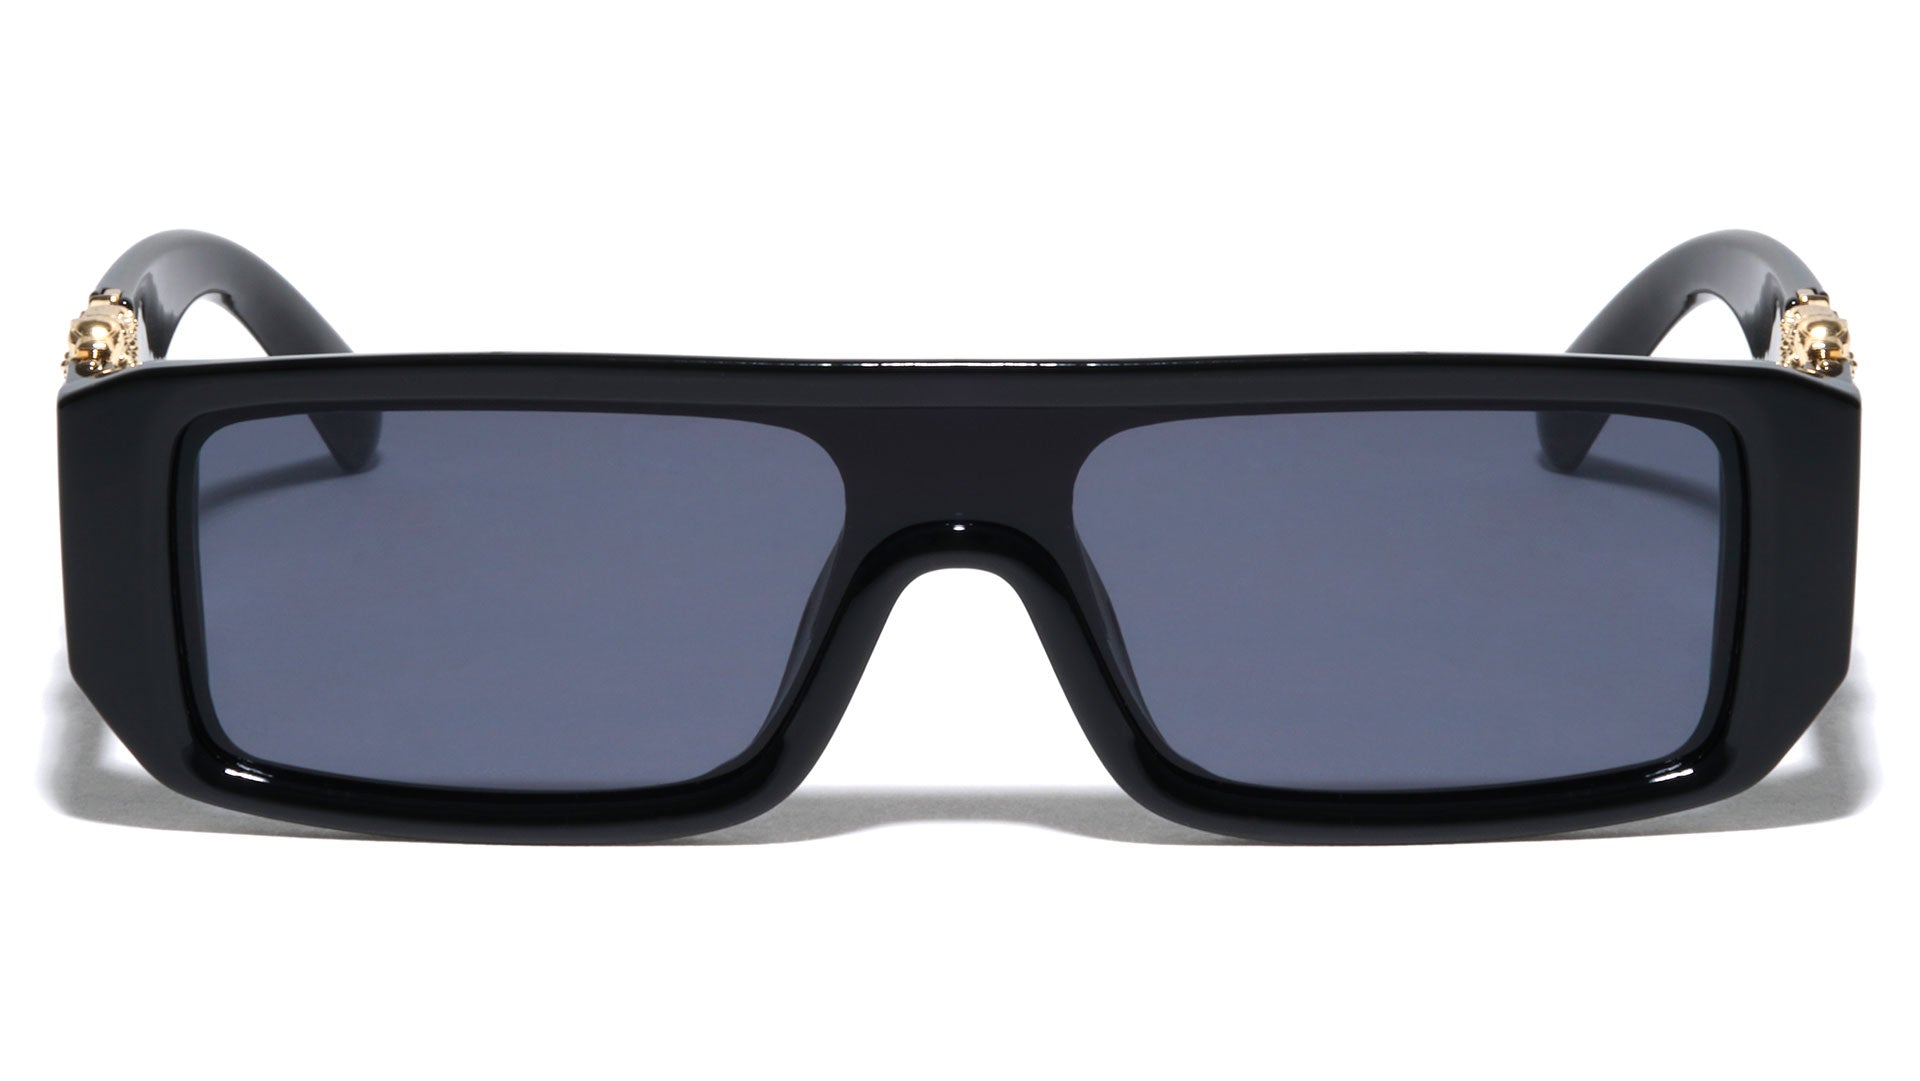 P30603 Lion Squared Aviators Wholesale Sunglasses - Frontier